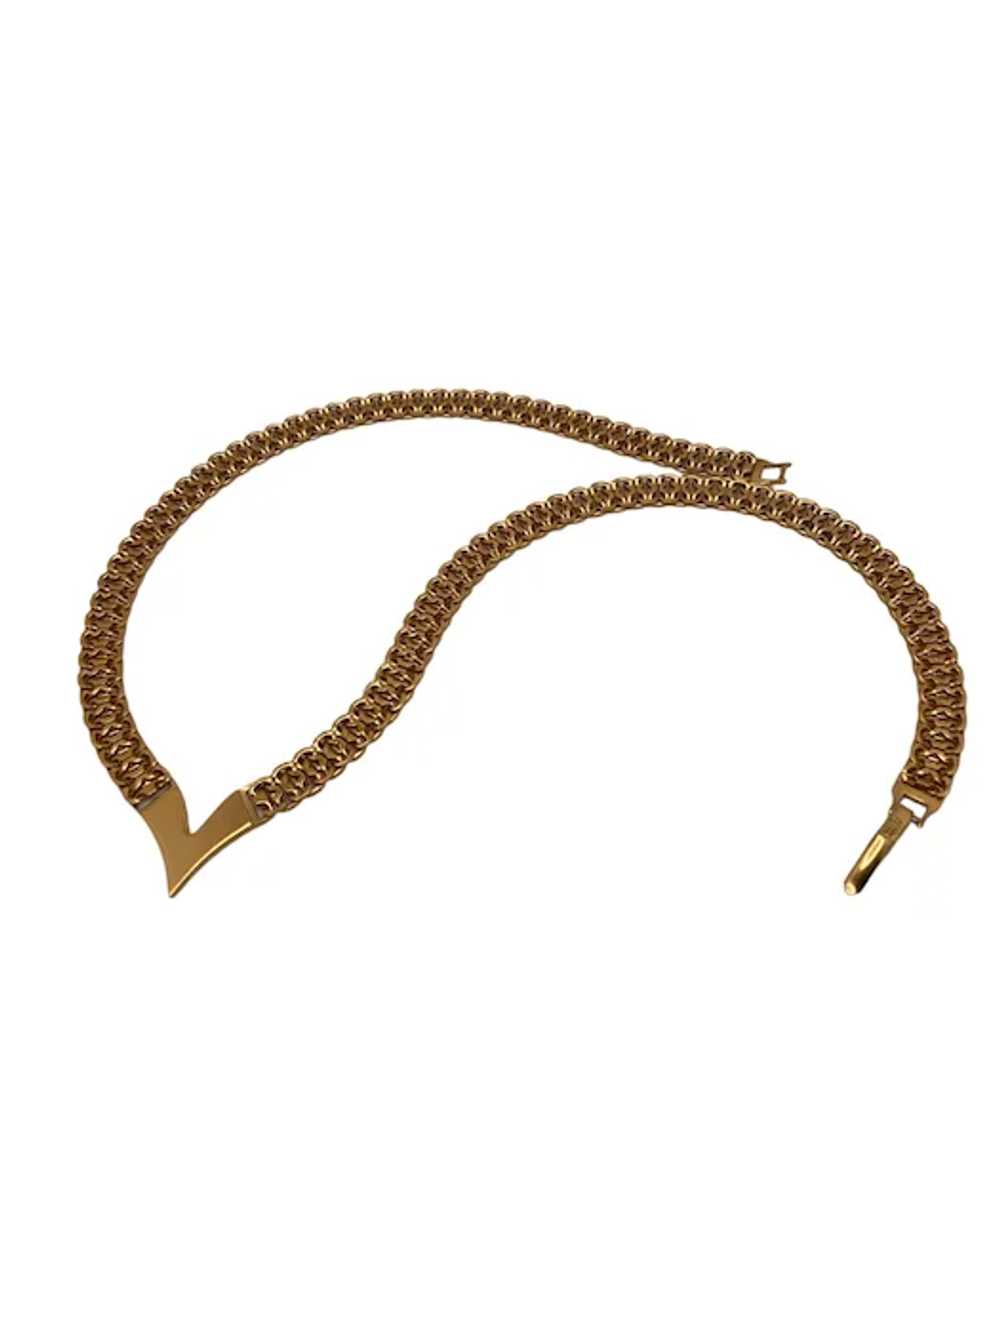 Vintage Napier Gold Tone Chevron Necklace - image 5